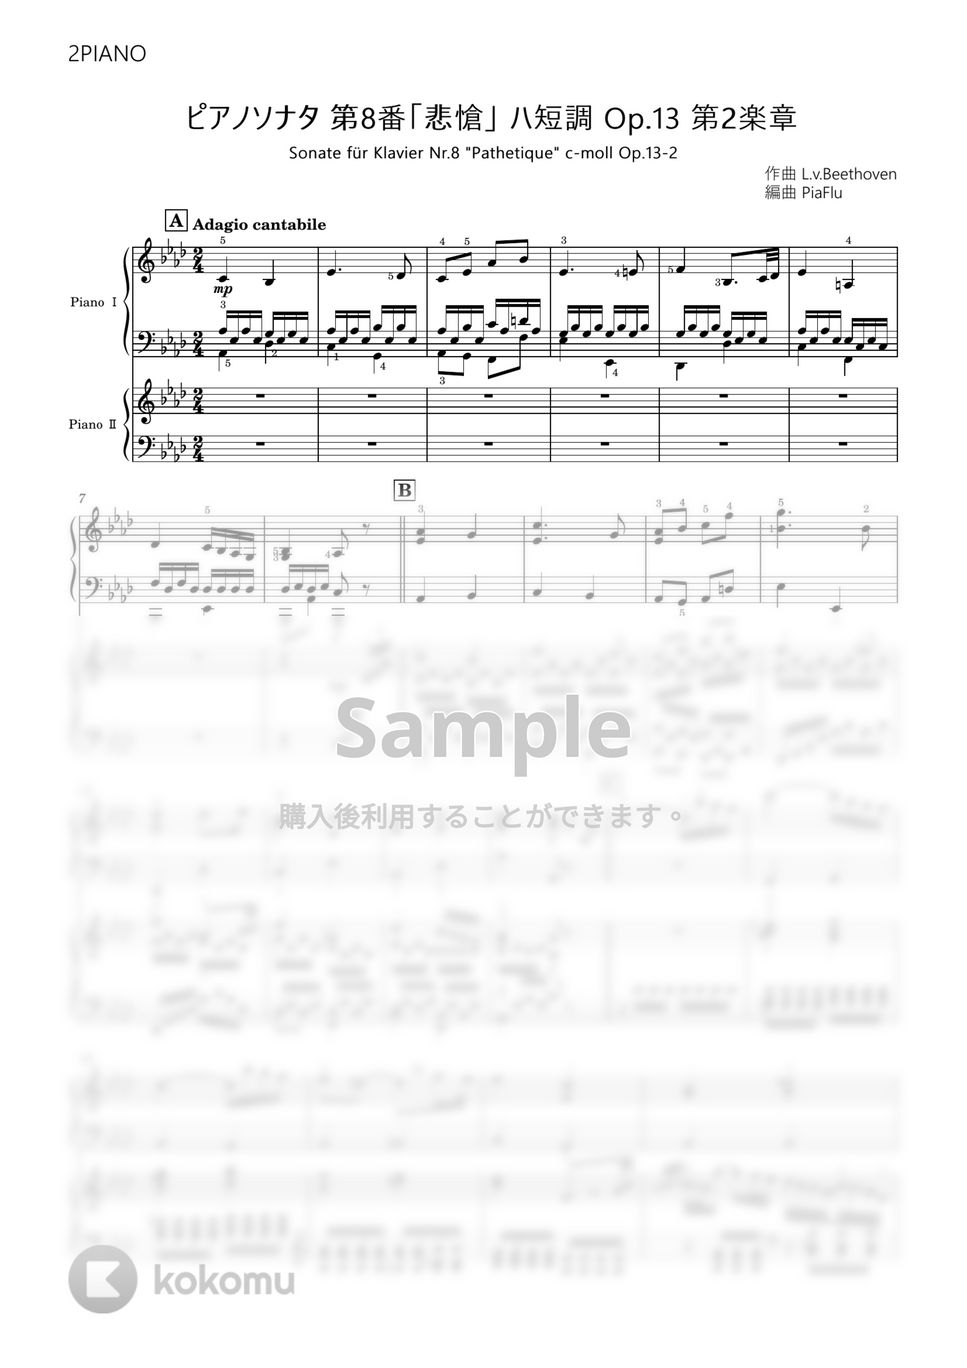 L.v.Beethoven - 【2台ピアノ編曲】ピアノソナタ 第8番「悲愴」ハ短調 Op.13 第2楽章 (2台ピアノ) by PiaFlu